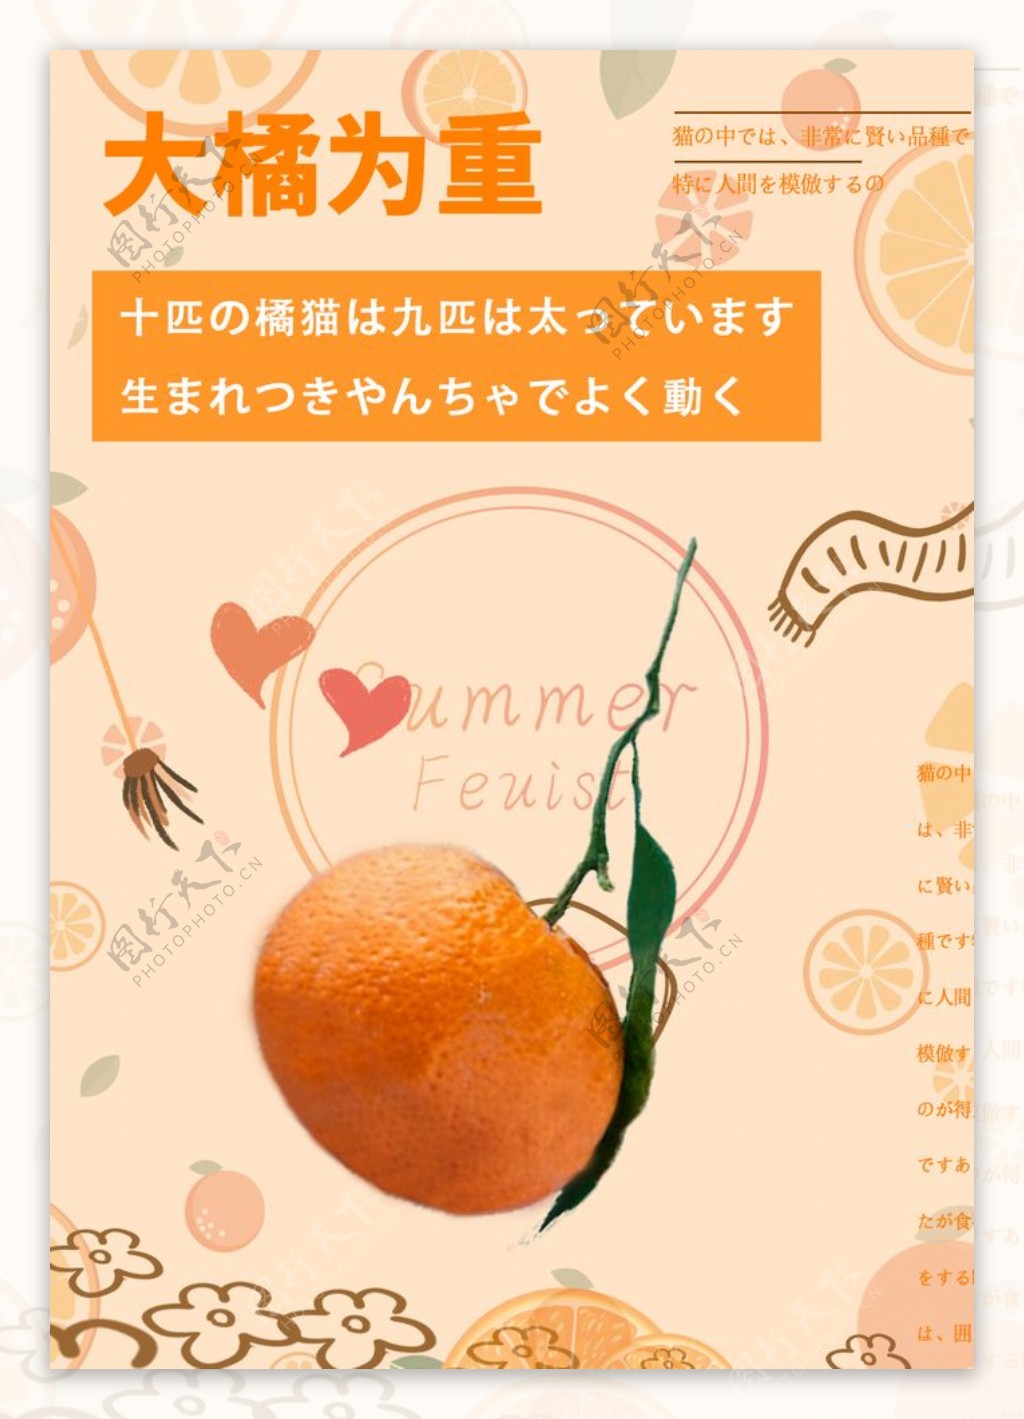 大橘为重